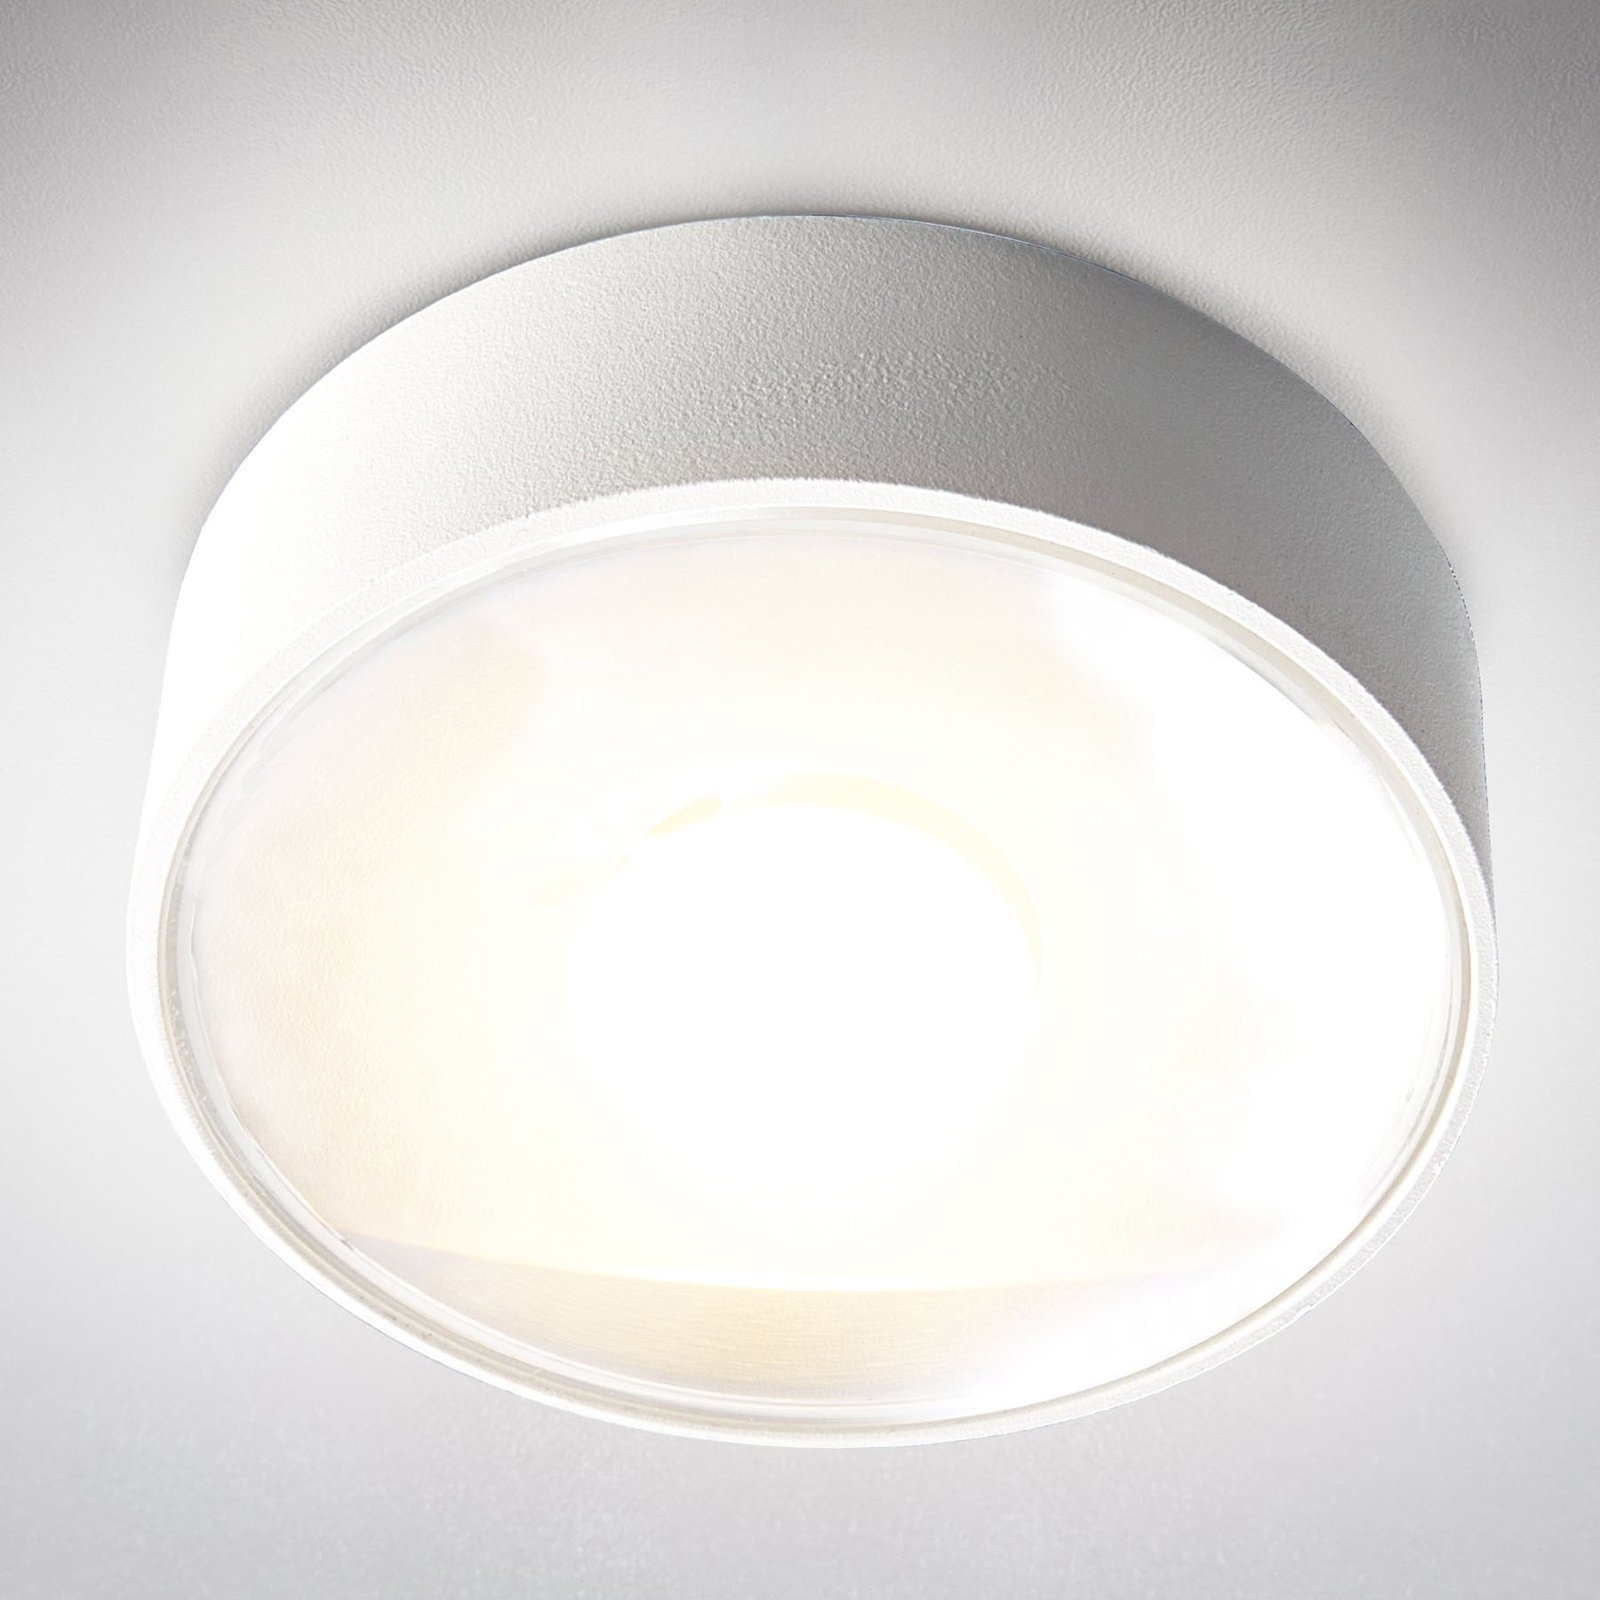 Girona LED outdoor ceiling light, white